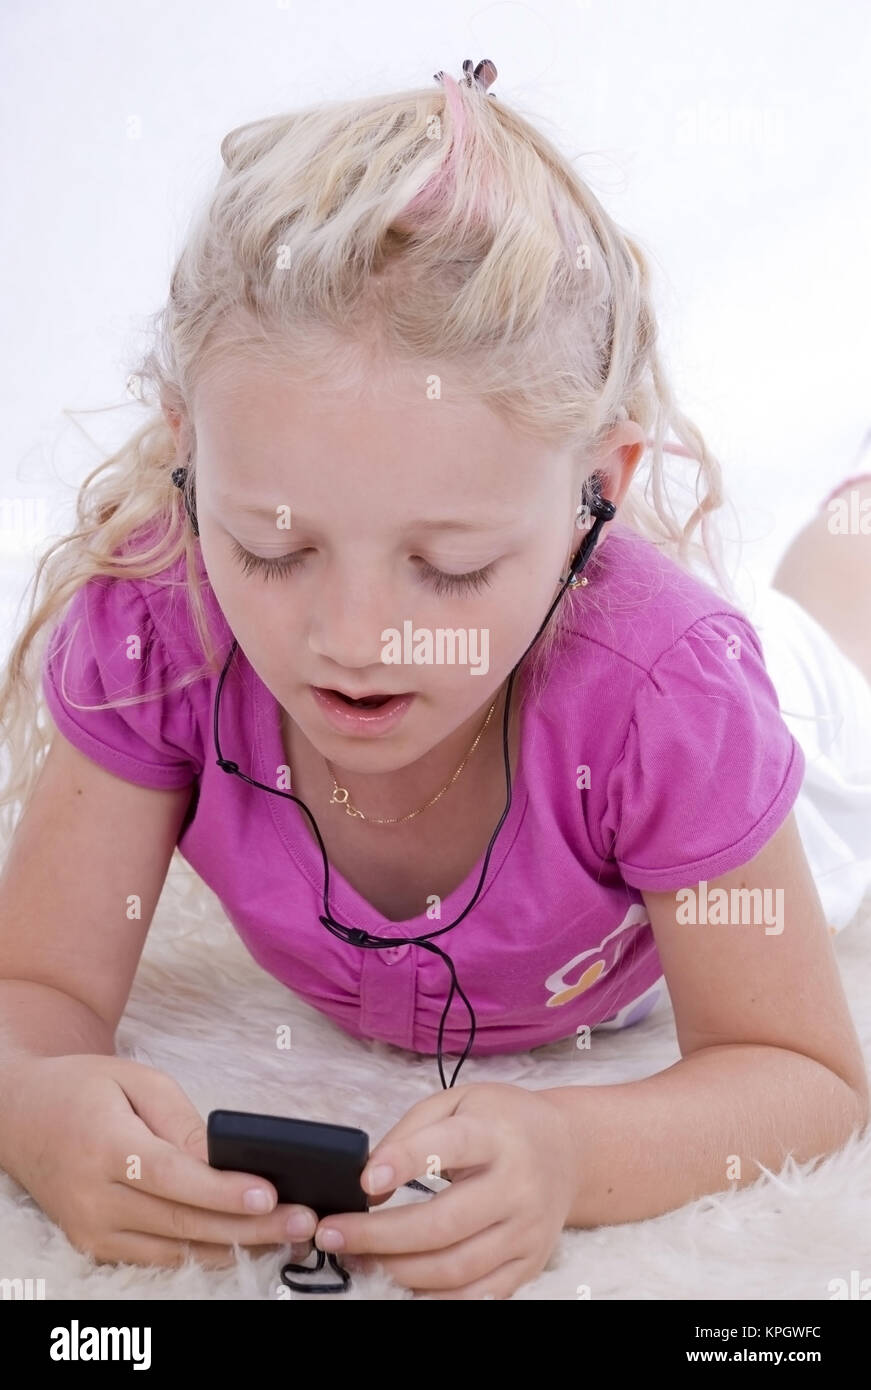 M?dchen, 7, hoert Musik - girl listening to music Stock Photo